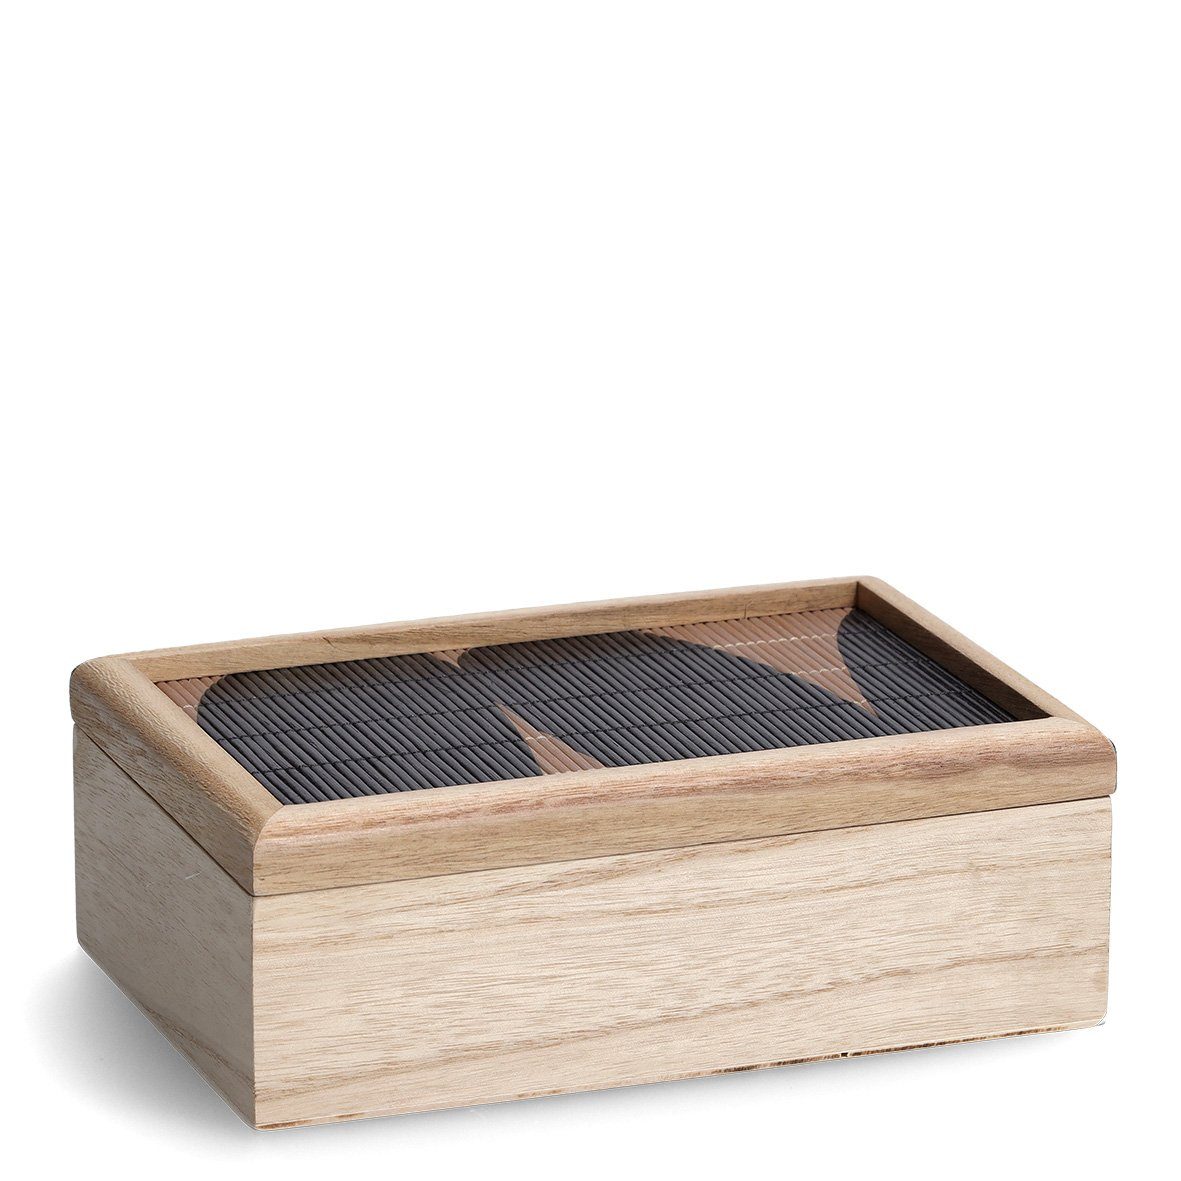 "Black ca. x 16 cm x 24 Holz, Aufbewahrungsbox Mosaic, 8,5 Present natur/schwarz, Zeller Aufbewahrungskorb